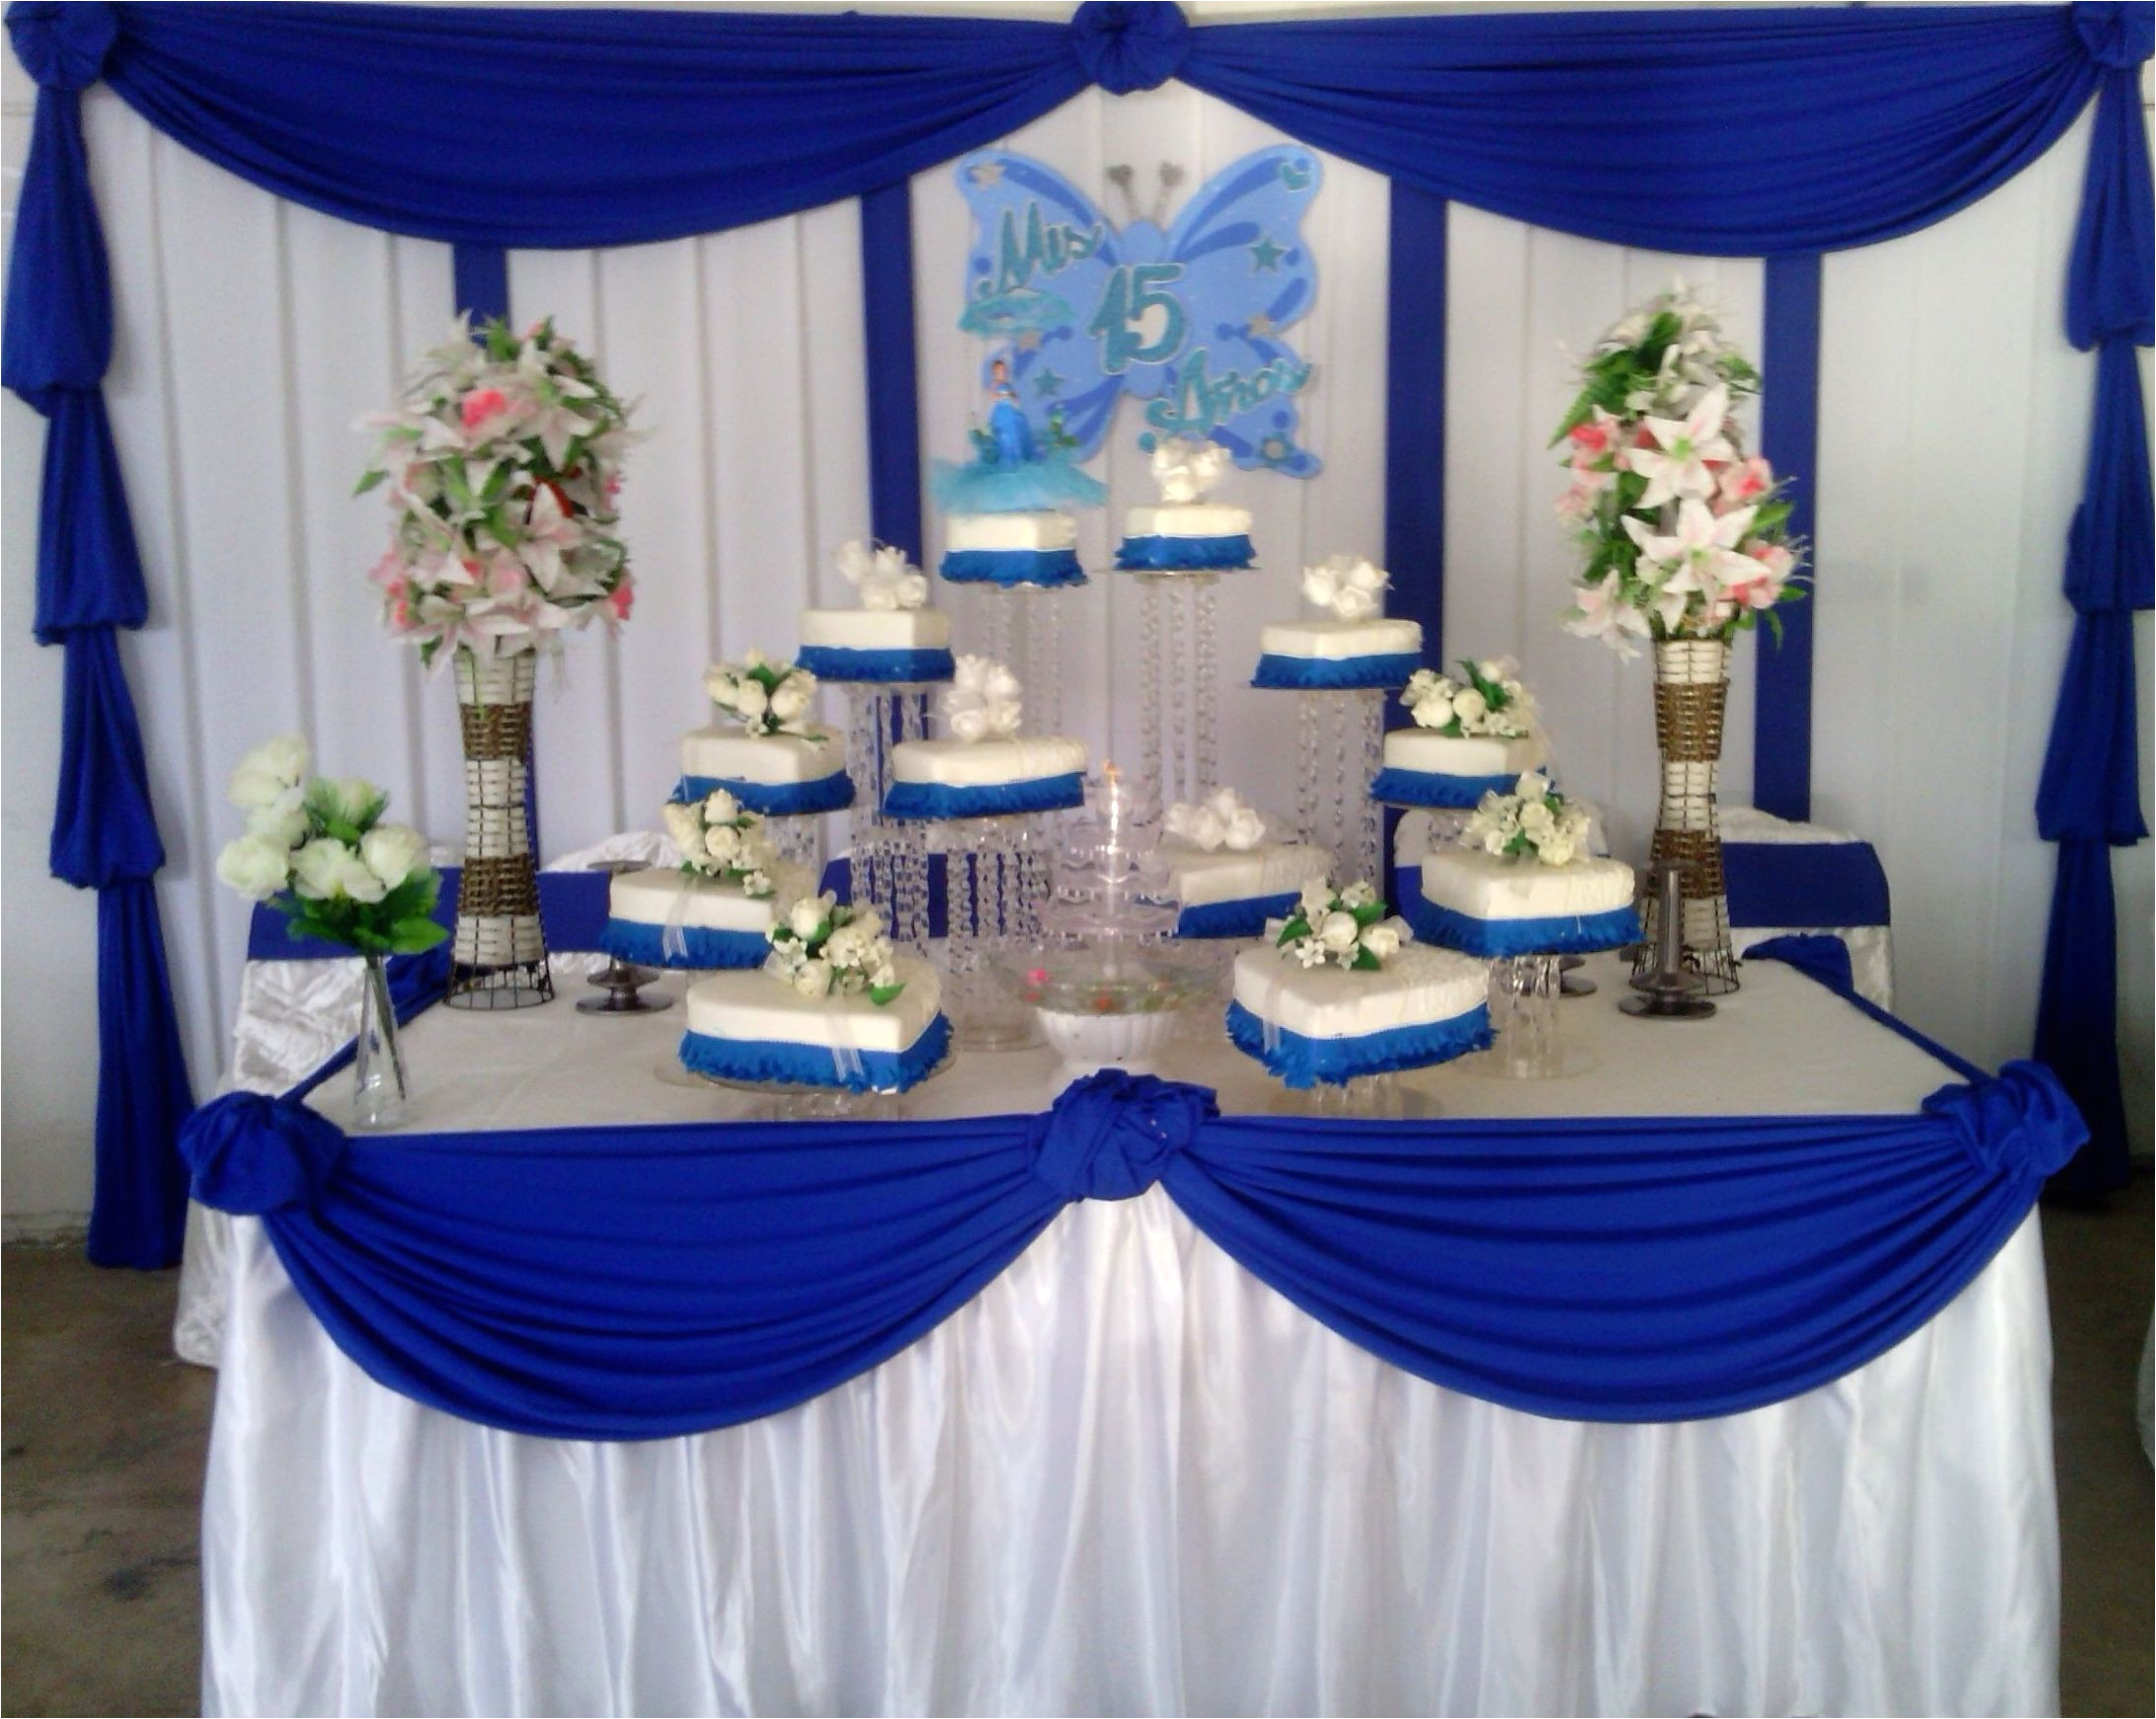 decoraciones en color azul especial para quince a os decoracion 15 anos